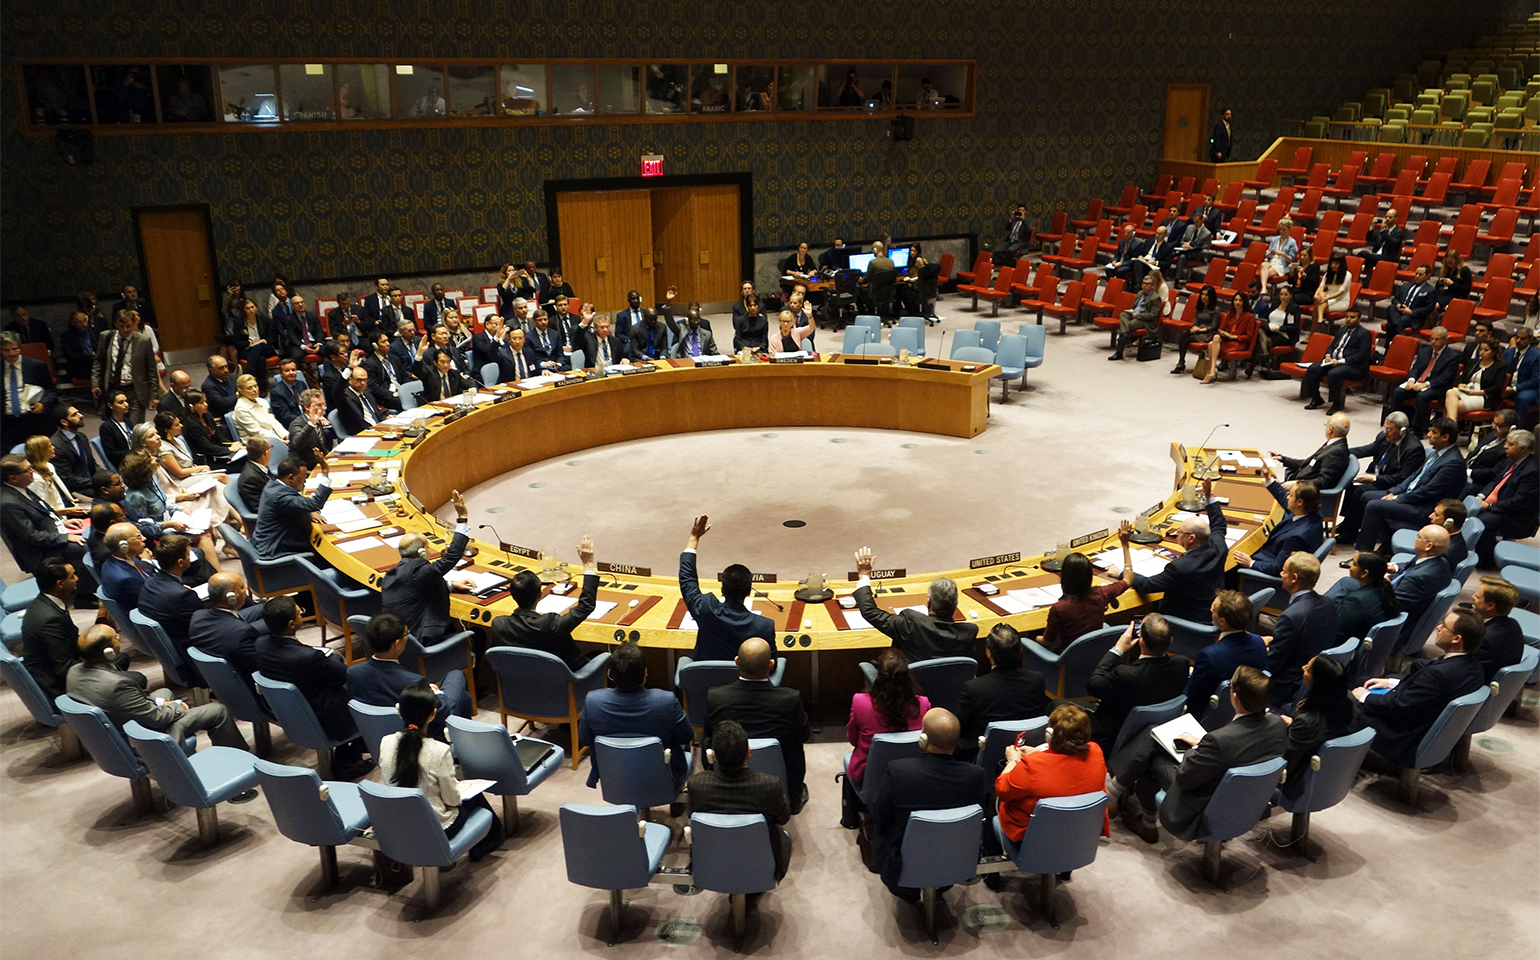 Le Conseil de sécurité de l'ONU doit approuver à une majorité de neuf voix et aucun veto la transmission de la demande d'adhésion à l'Assemblée générale des Nations Unies. AFP/Don Emmert